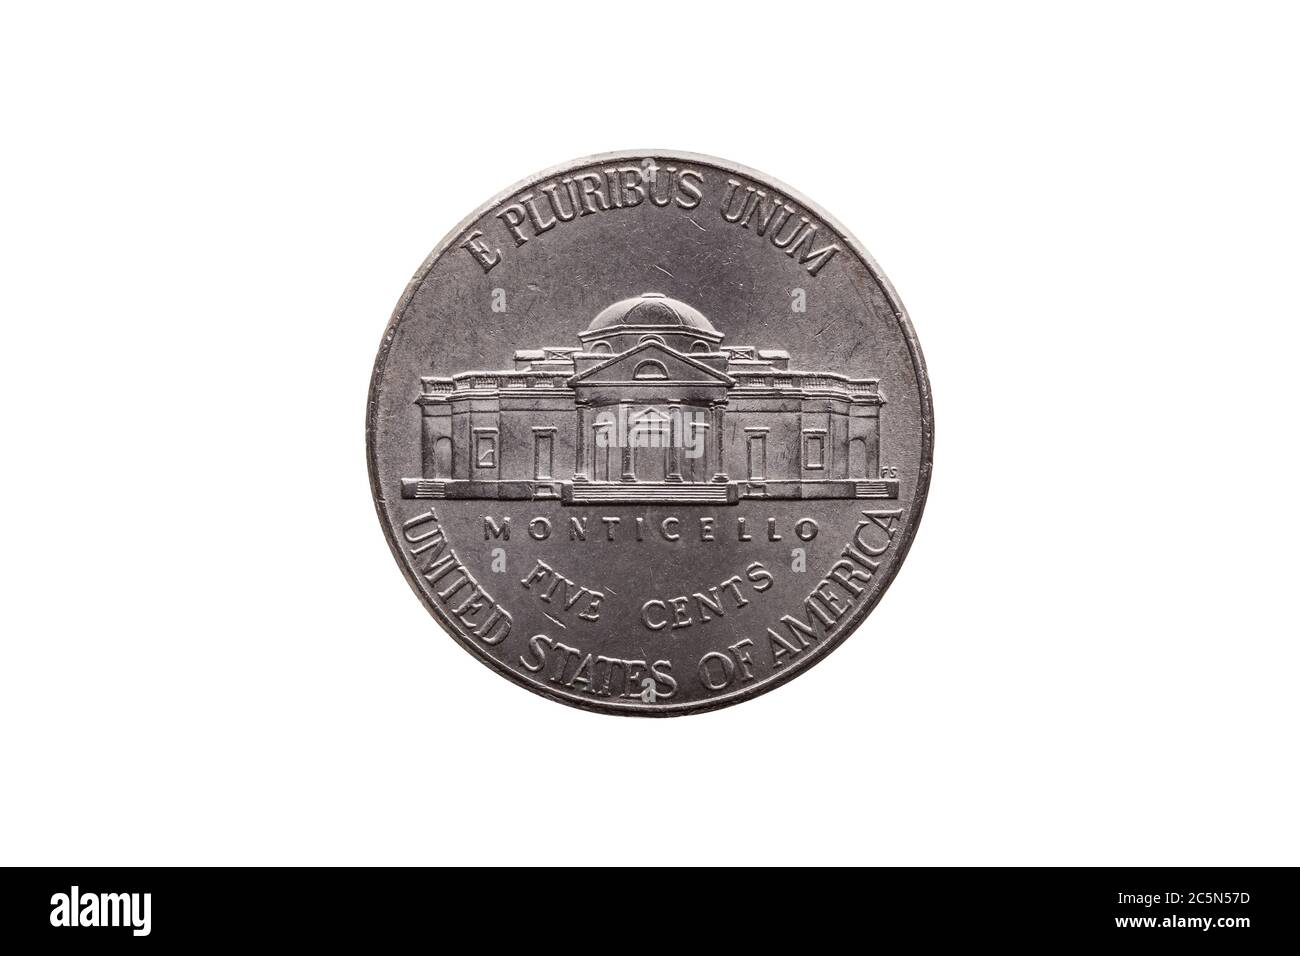 USA moneta di nickel half dime (25 cents) invertita con Monticello tagliato e isolato su sfondo bianco Foto Stock